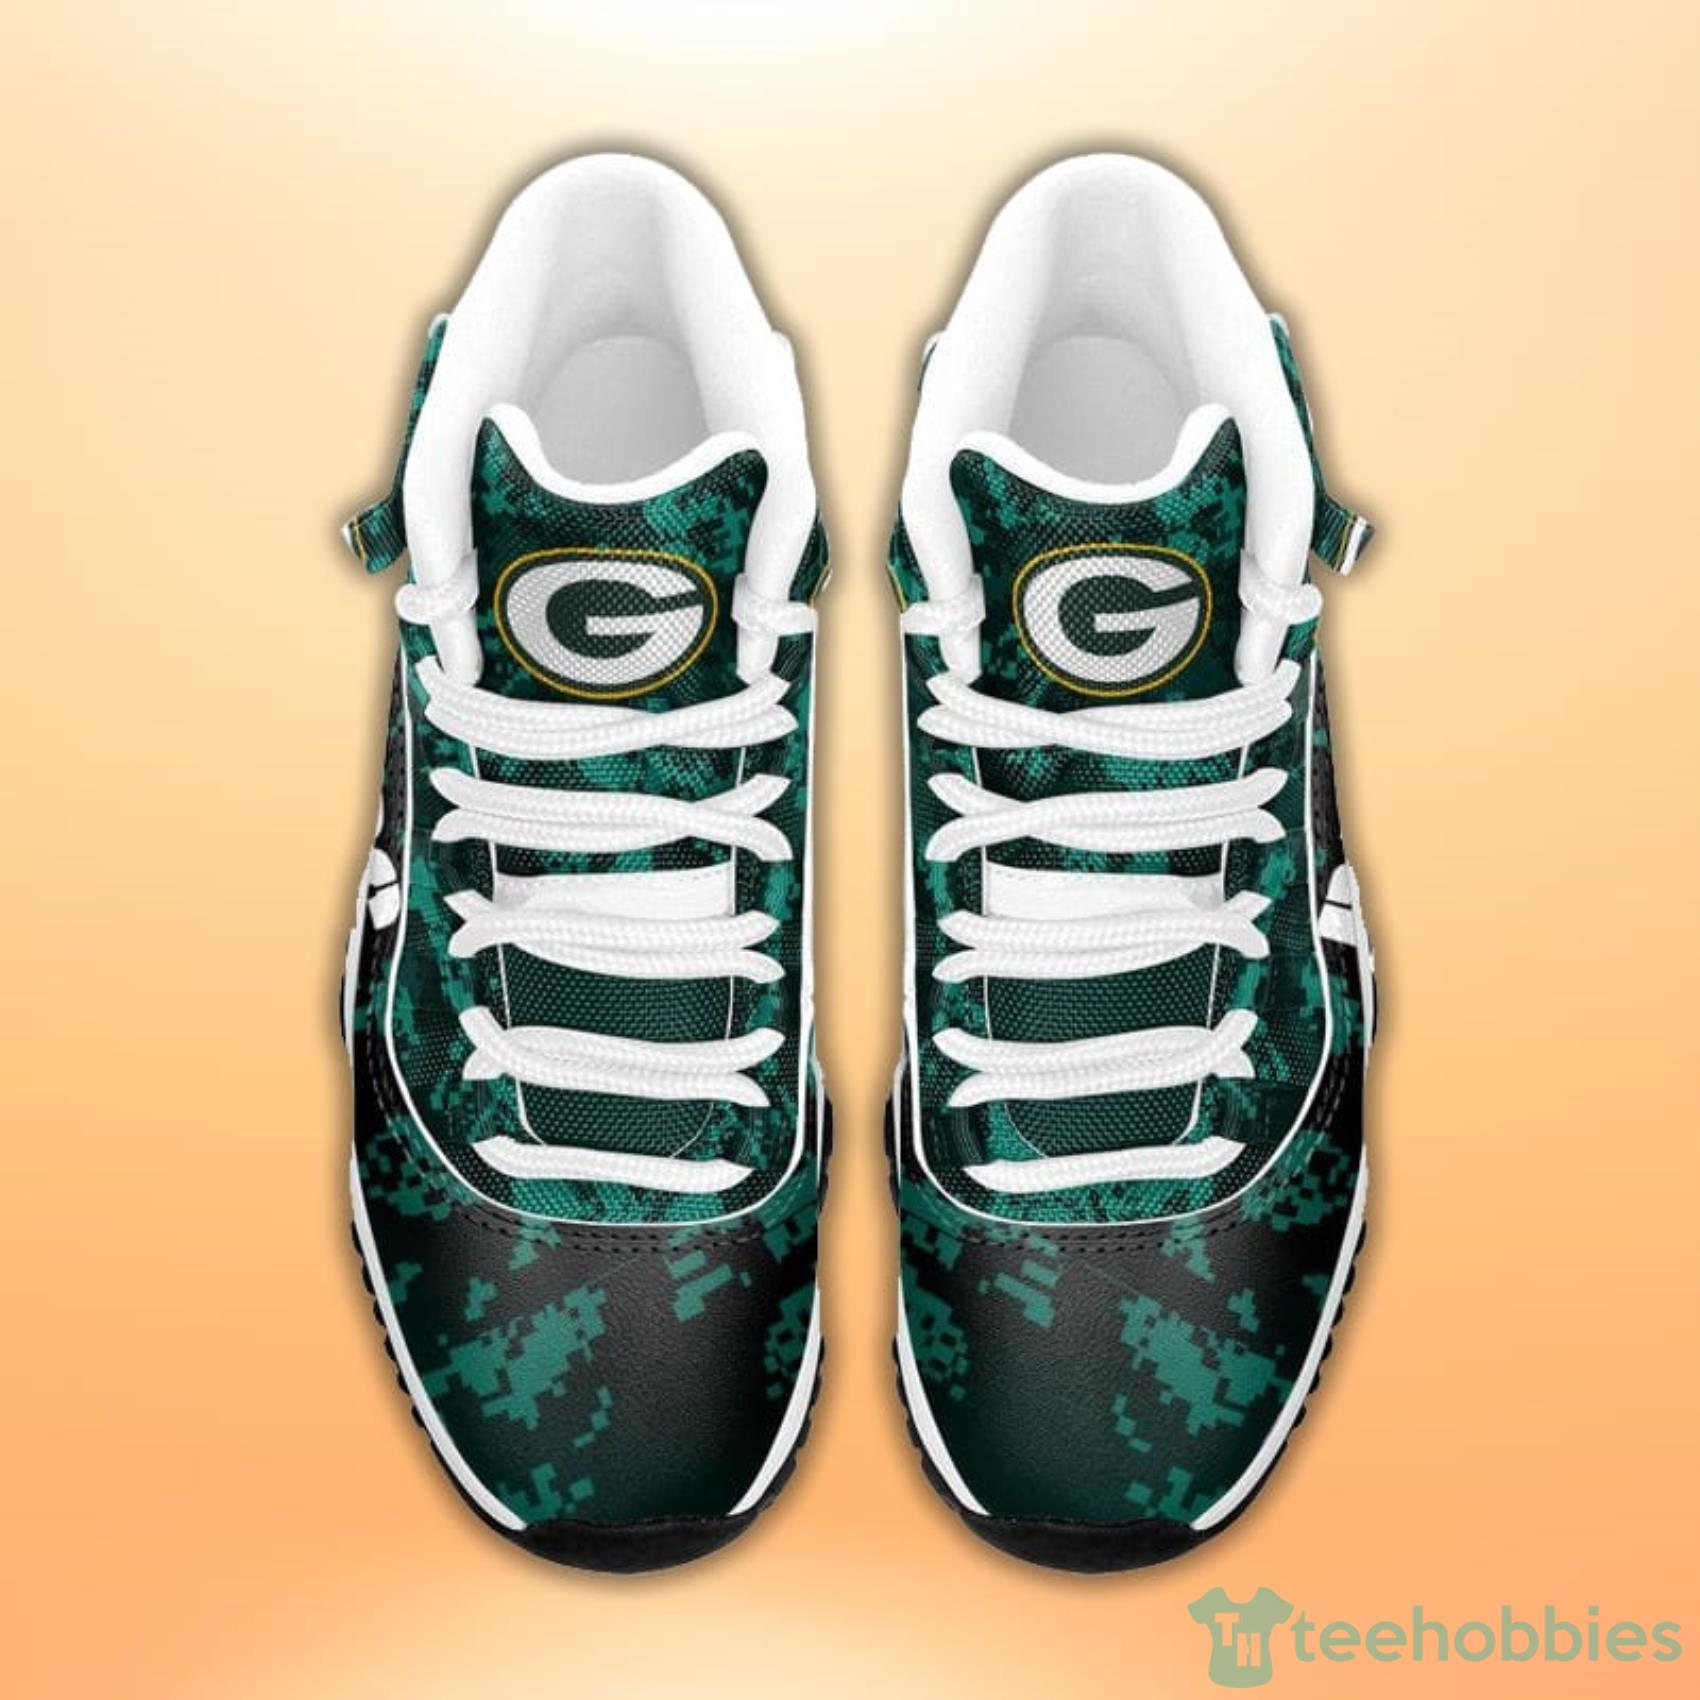 Green Bay Packers Custom Air Jordan 11 Sneakers - Inktee Store